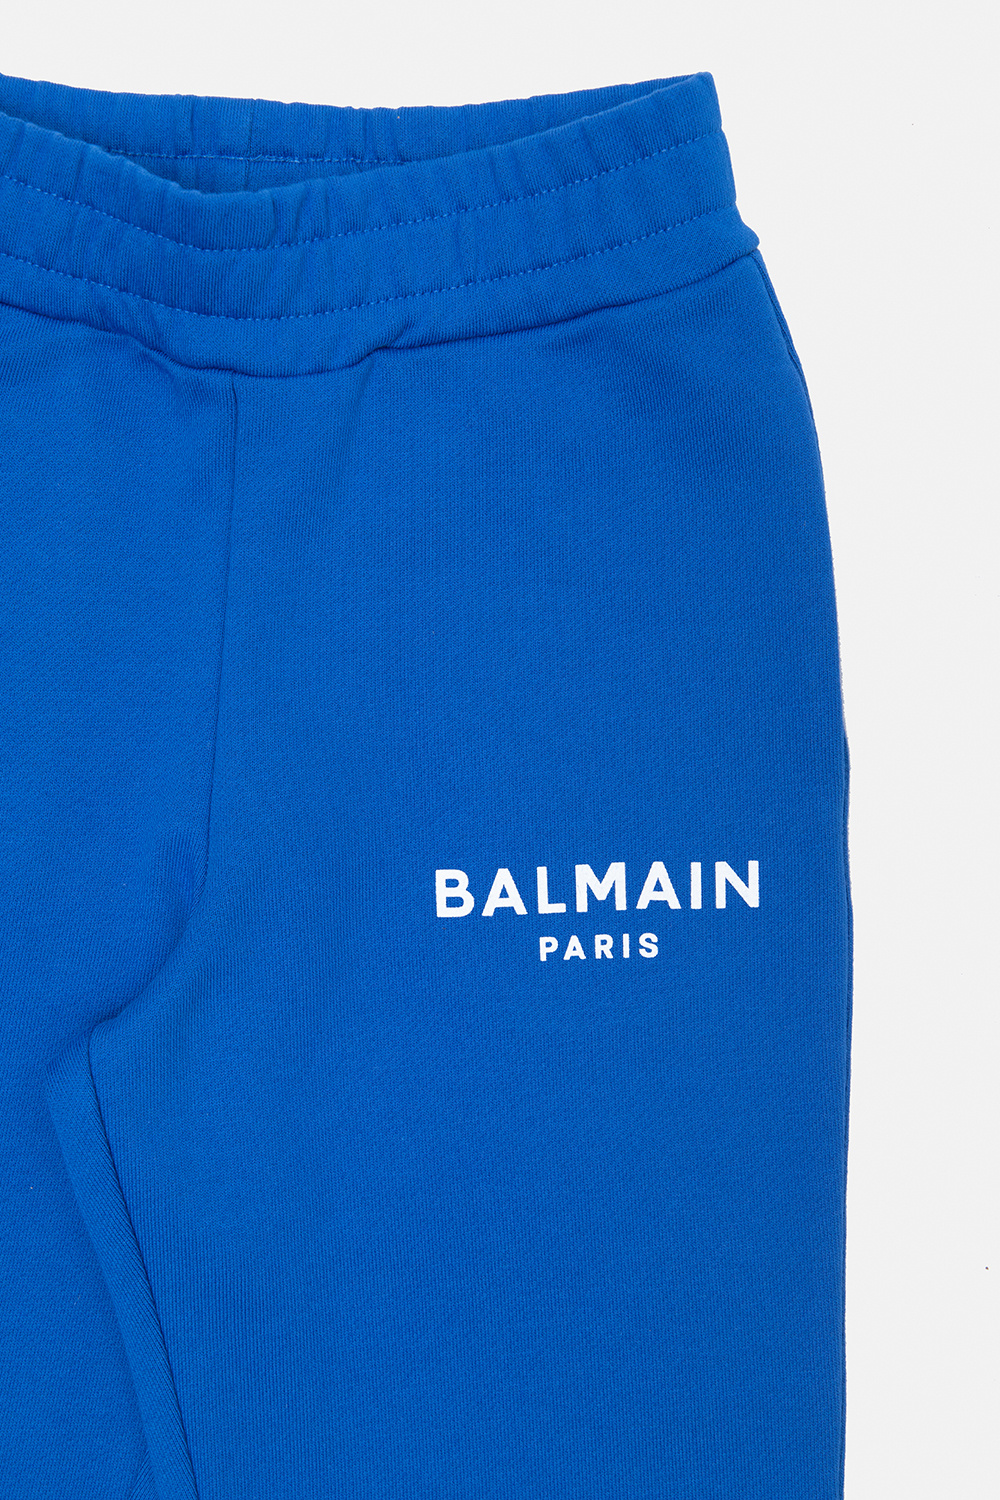 balmain Eyewear Kids Sweatpants with logo